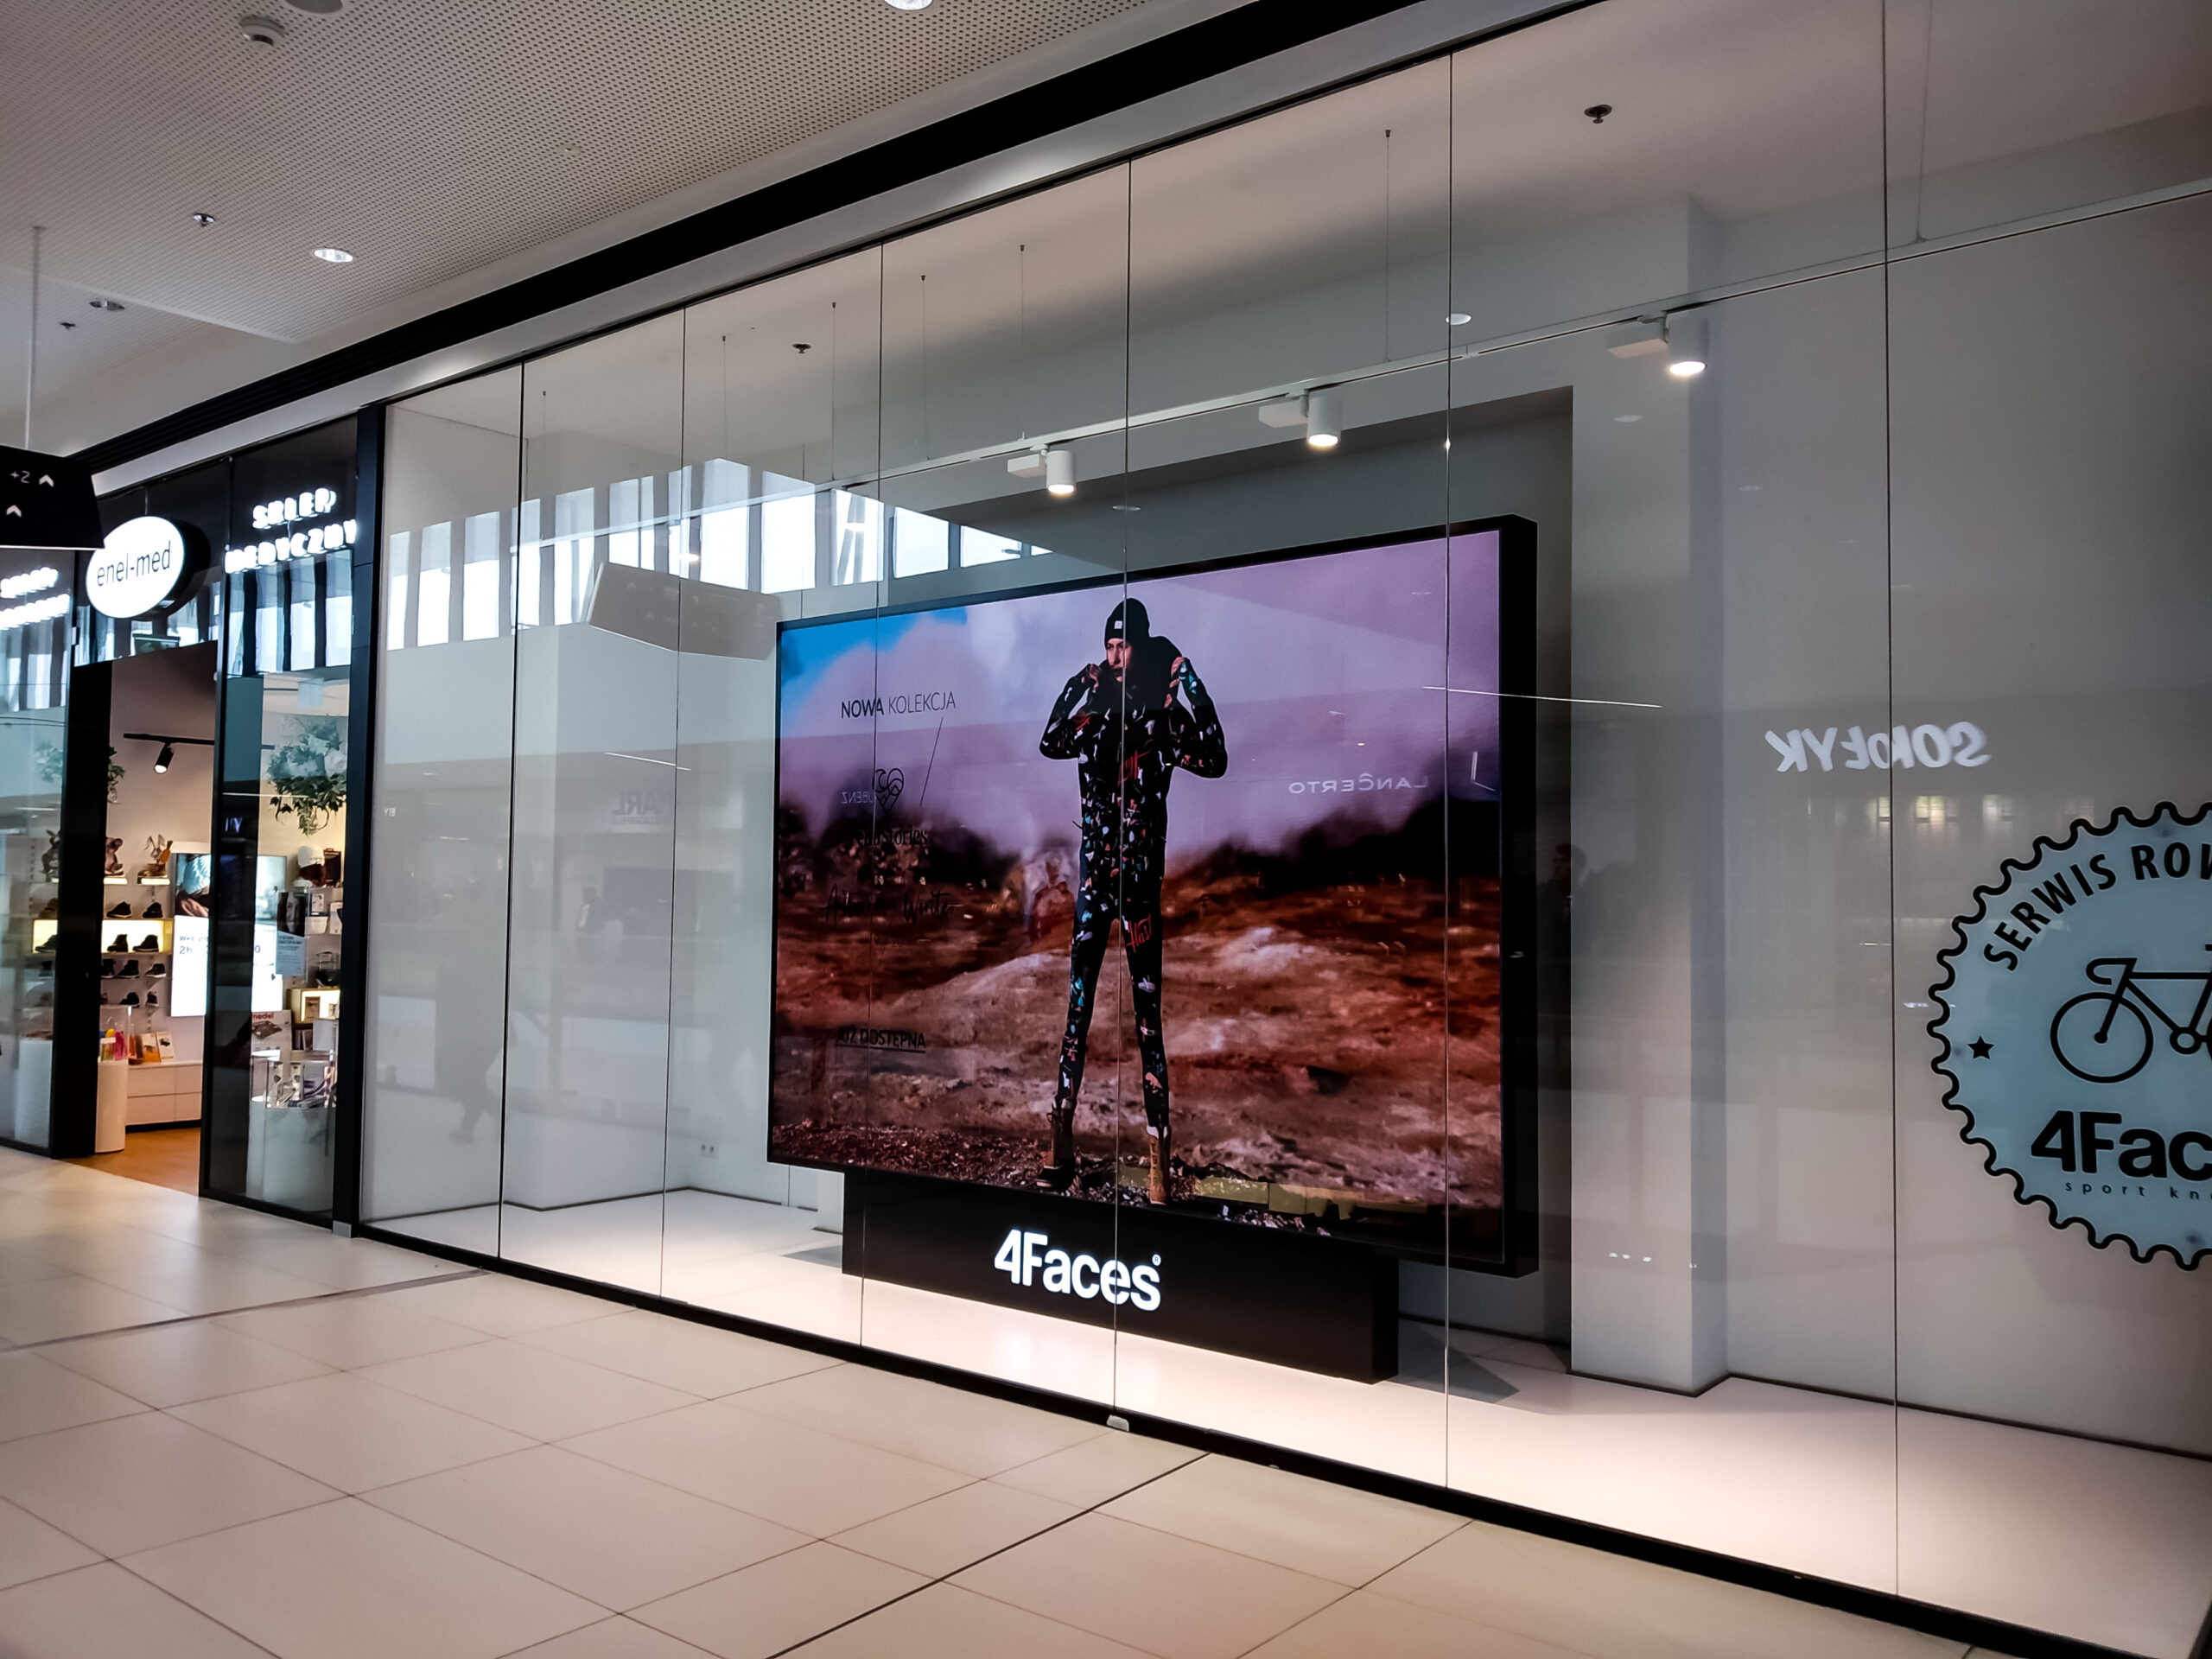 Ekran LED w wityrnie sklepi 4Faces w Warszawie